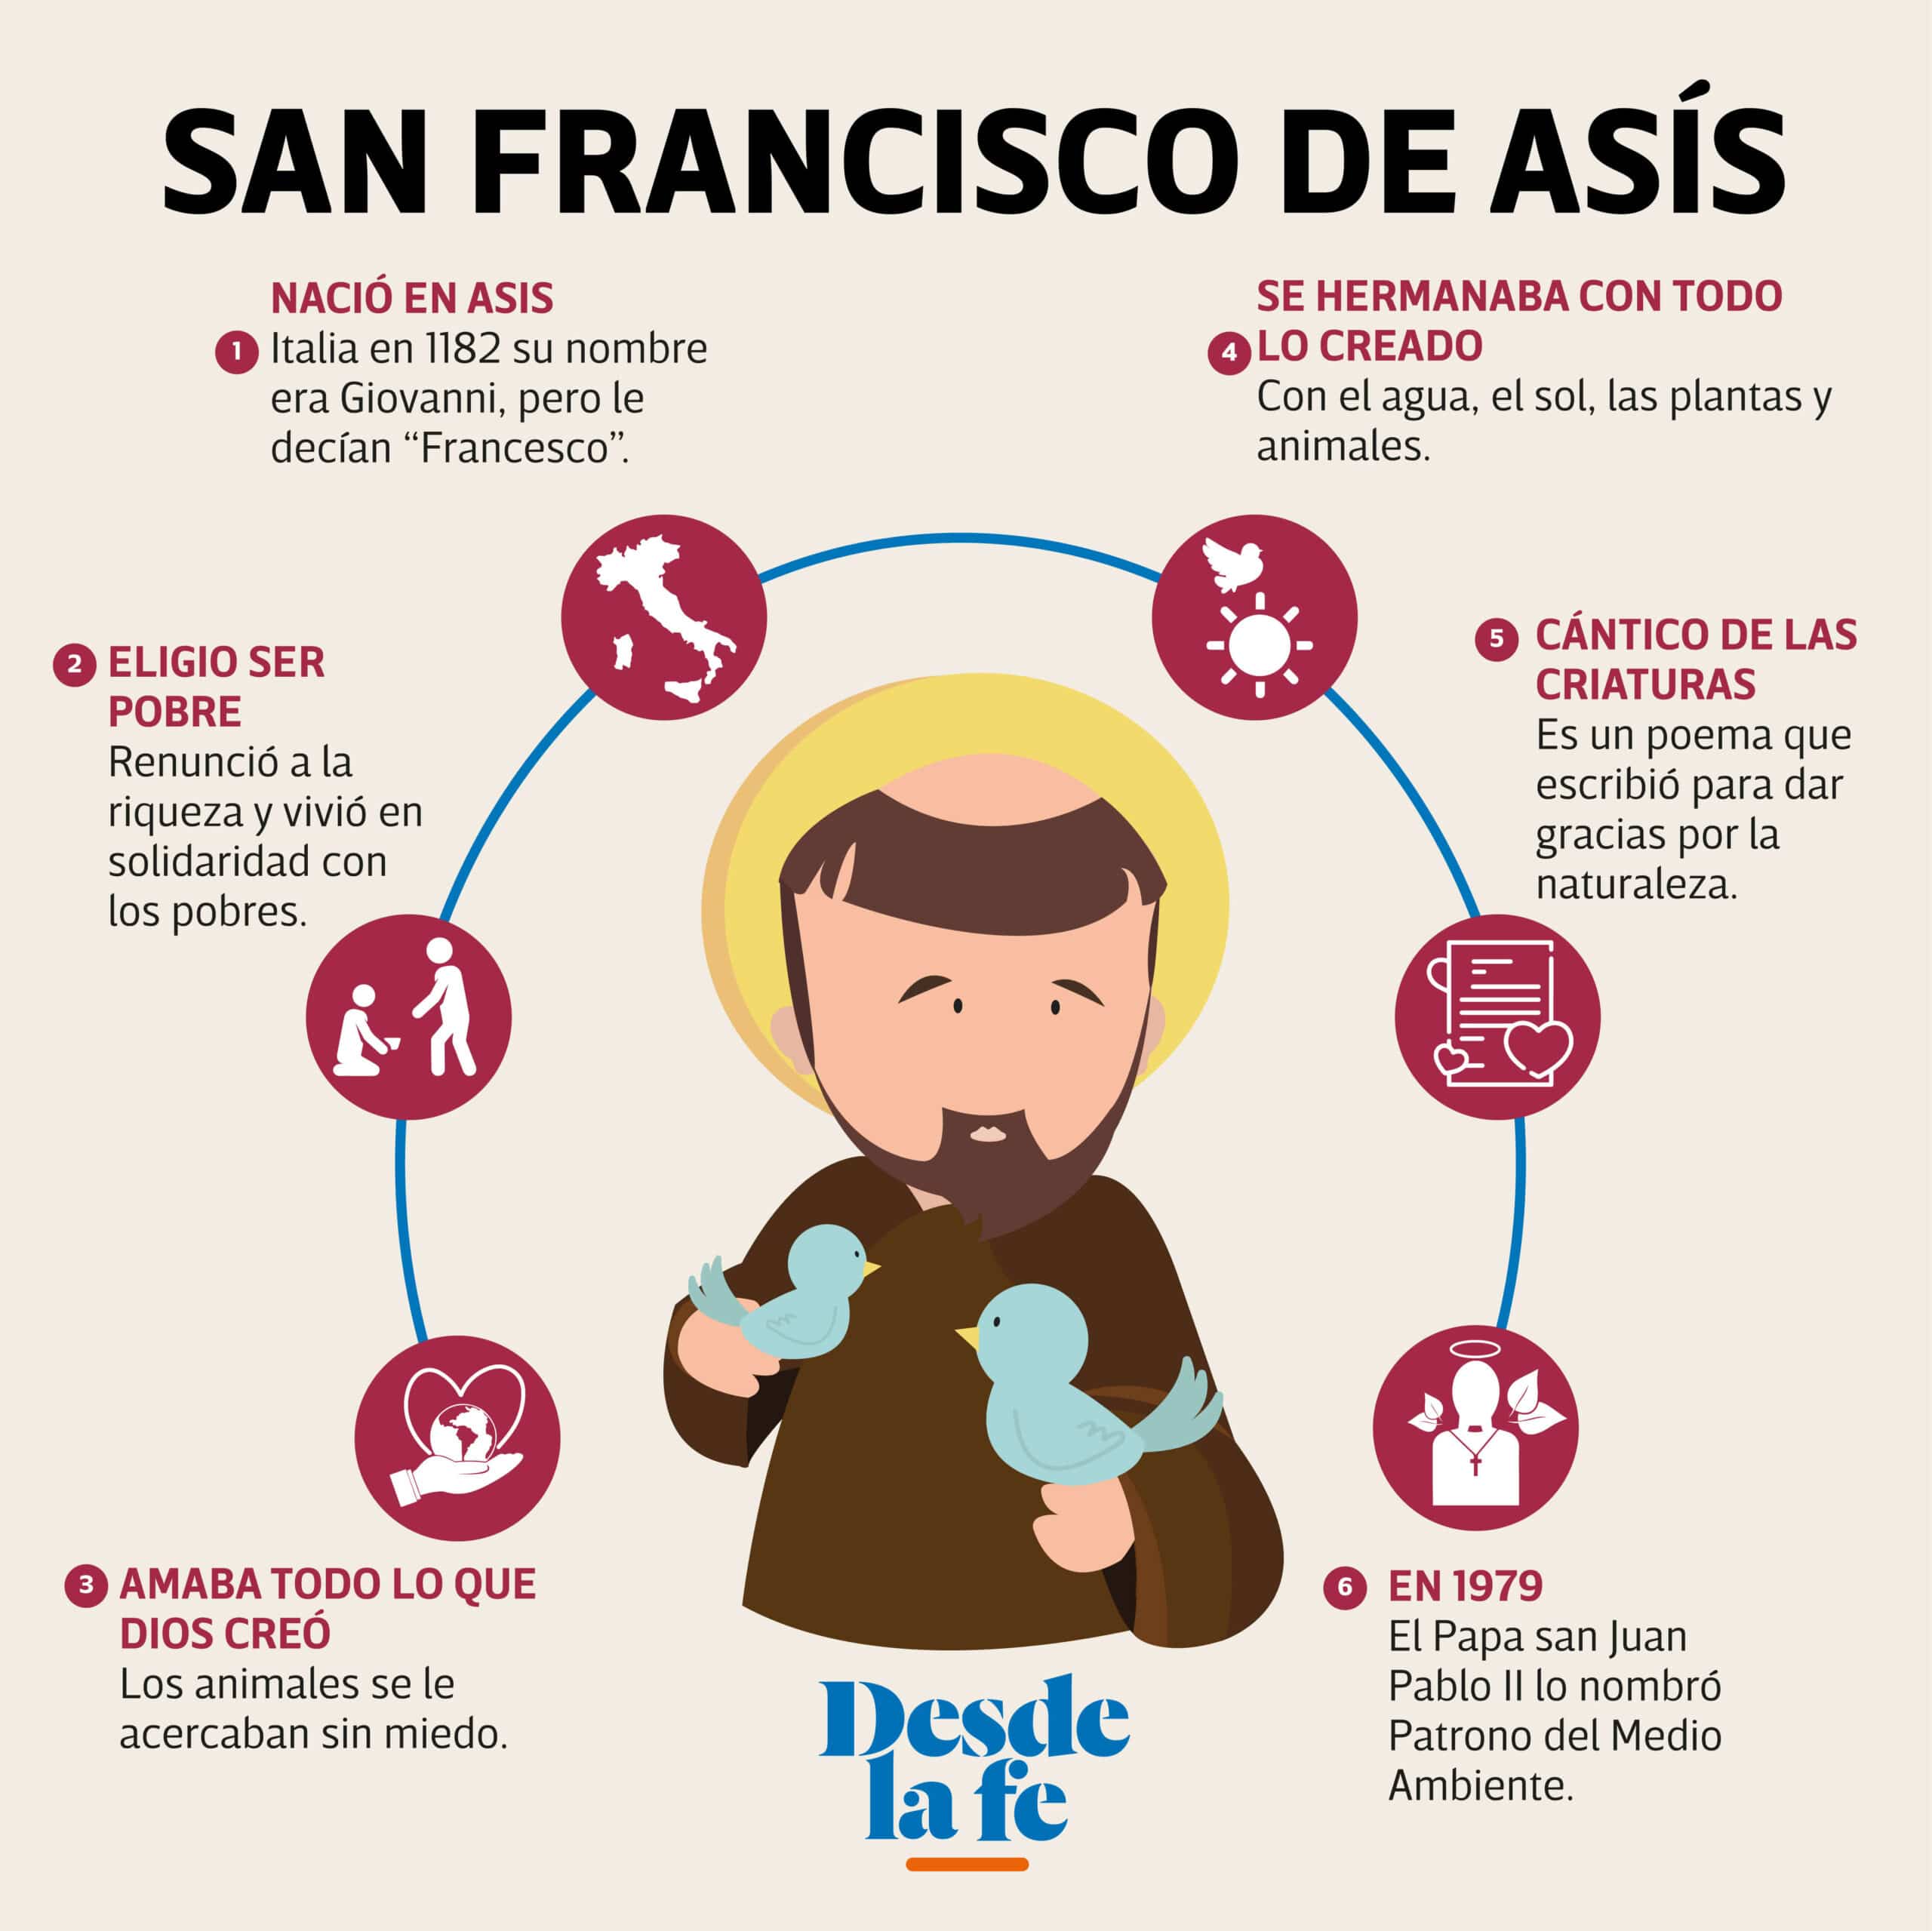 Conoce la vida y obra de San Francisco de Asís.